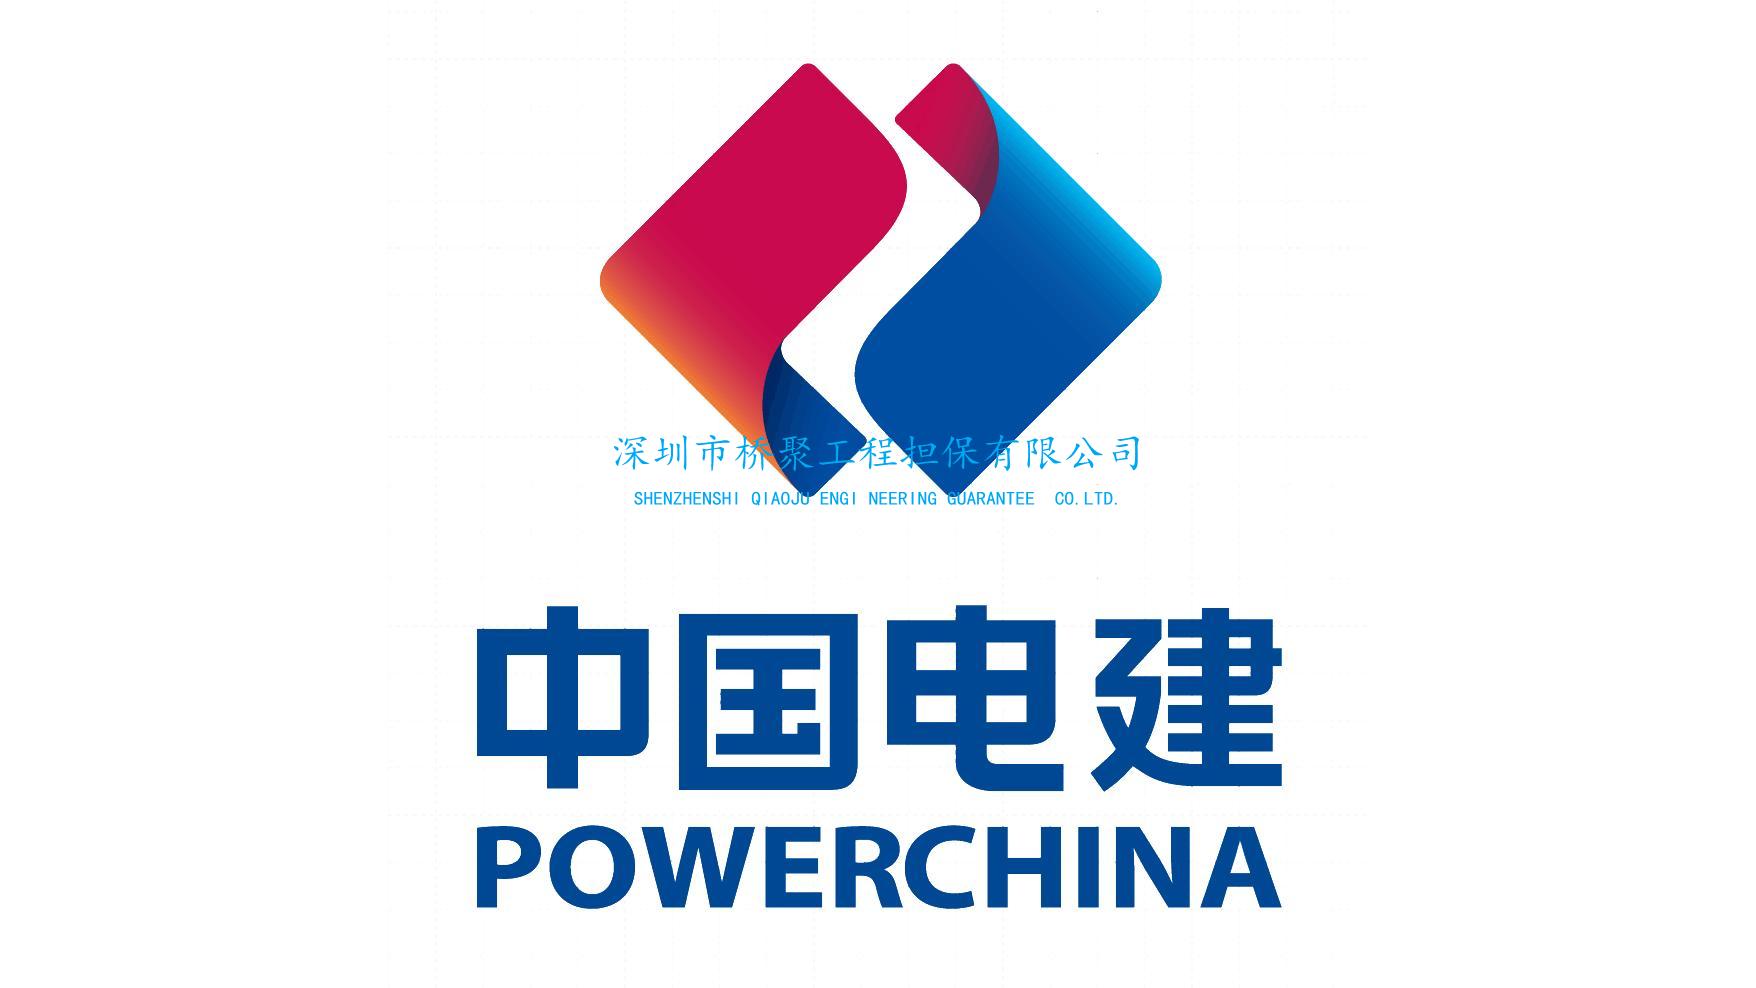 中国水利水电集团投标保证金保函